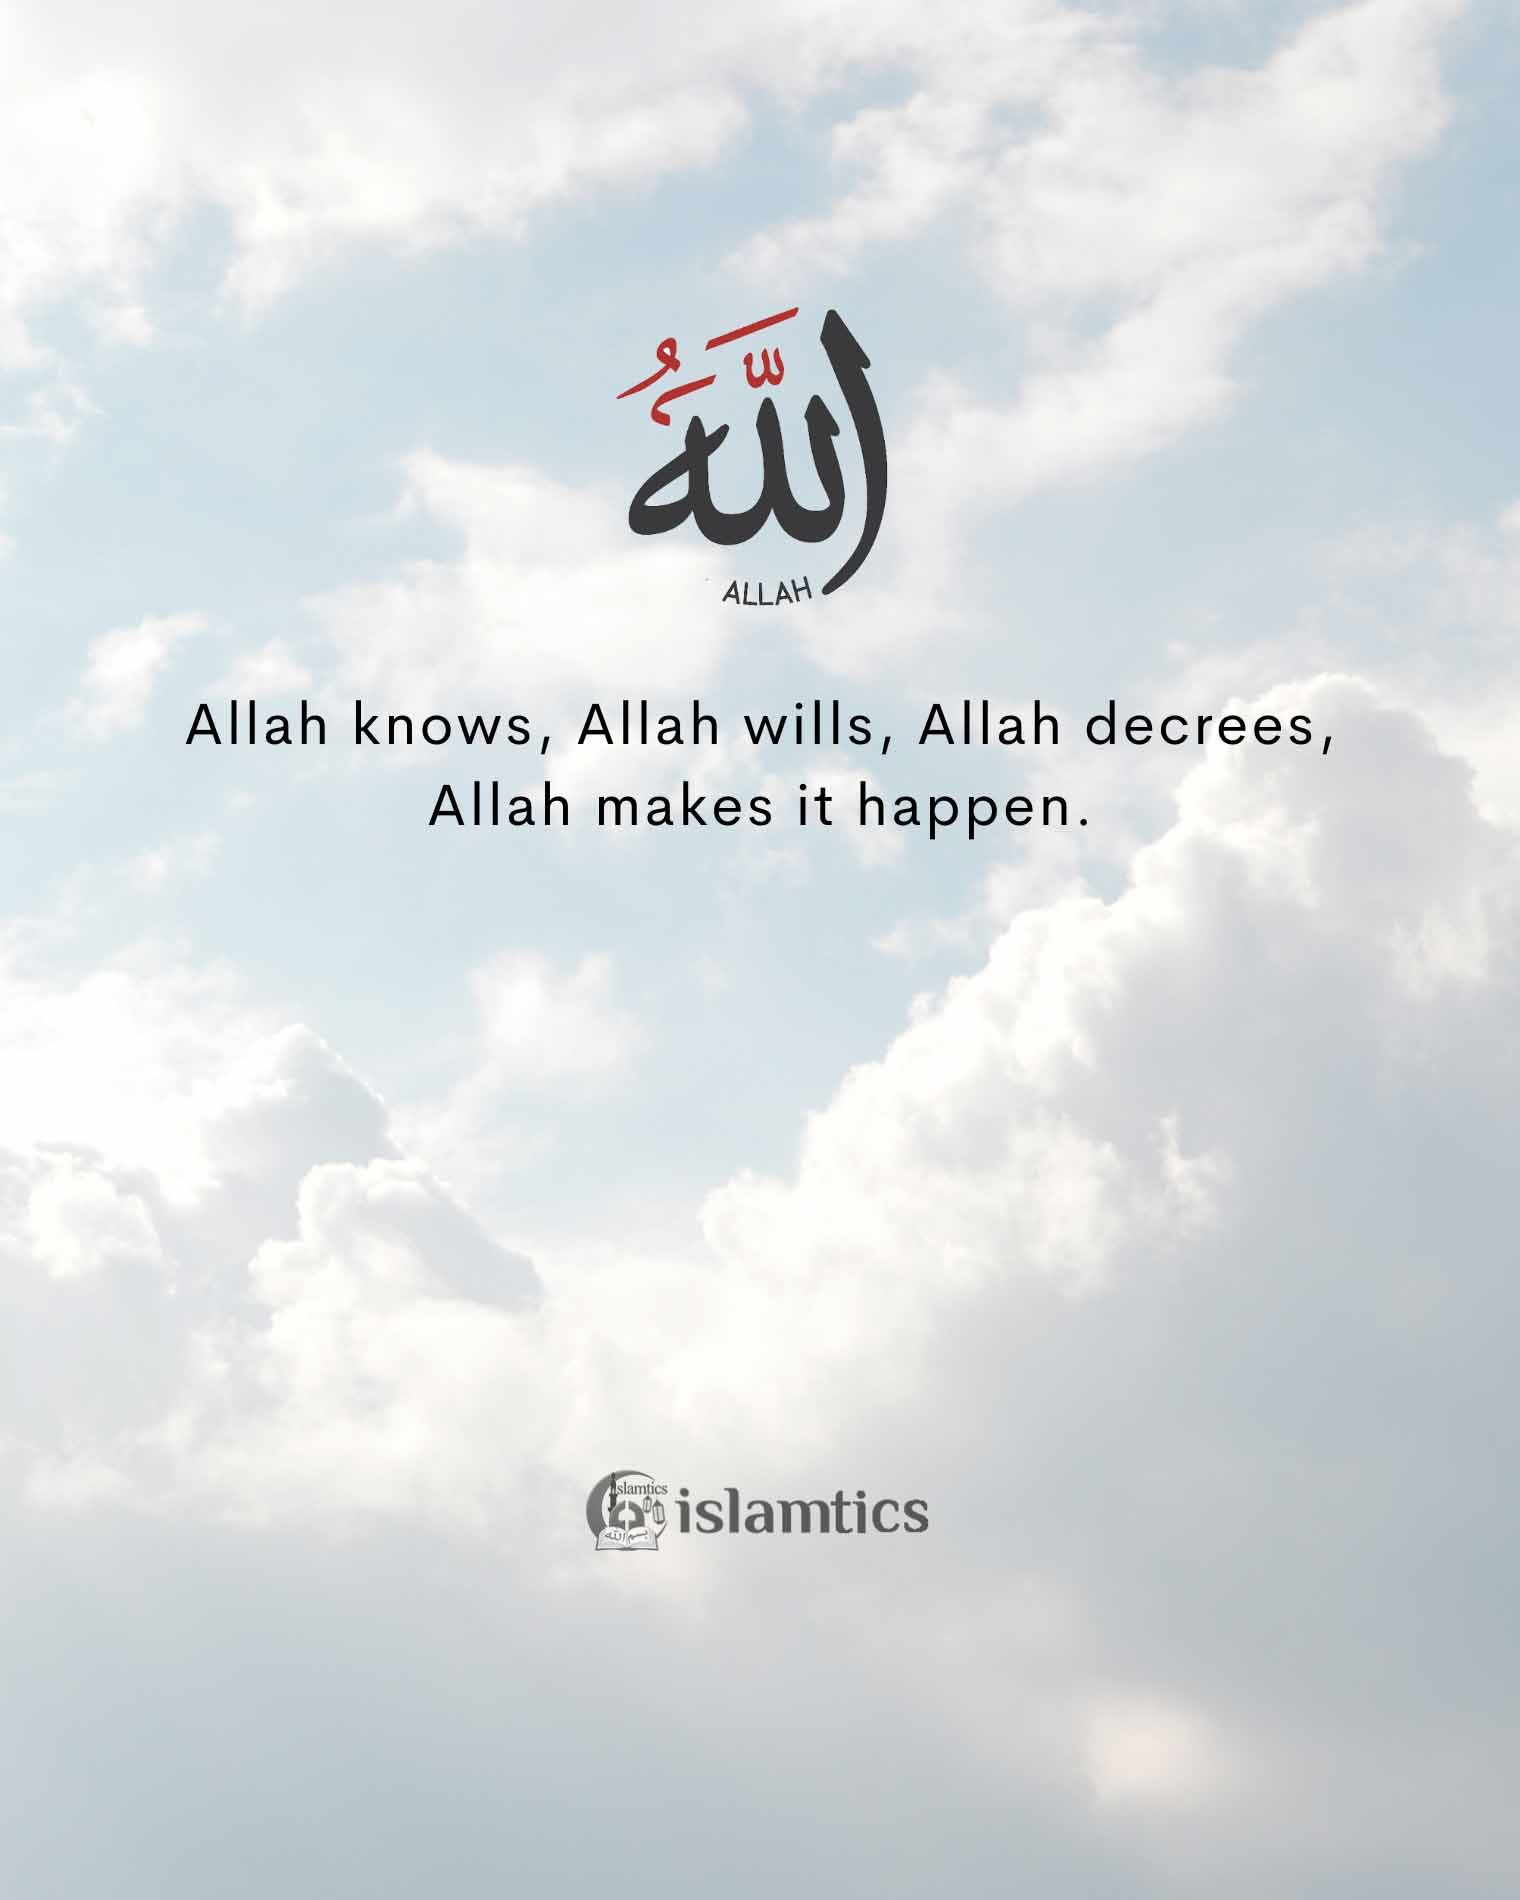  Allah knows, Allah wills, Allah decrees, Allah makes it happen.